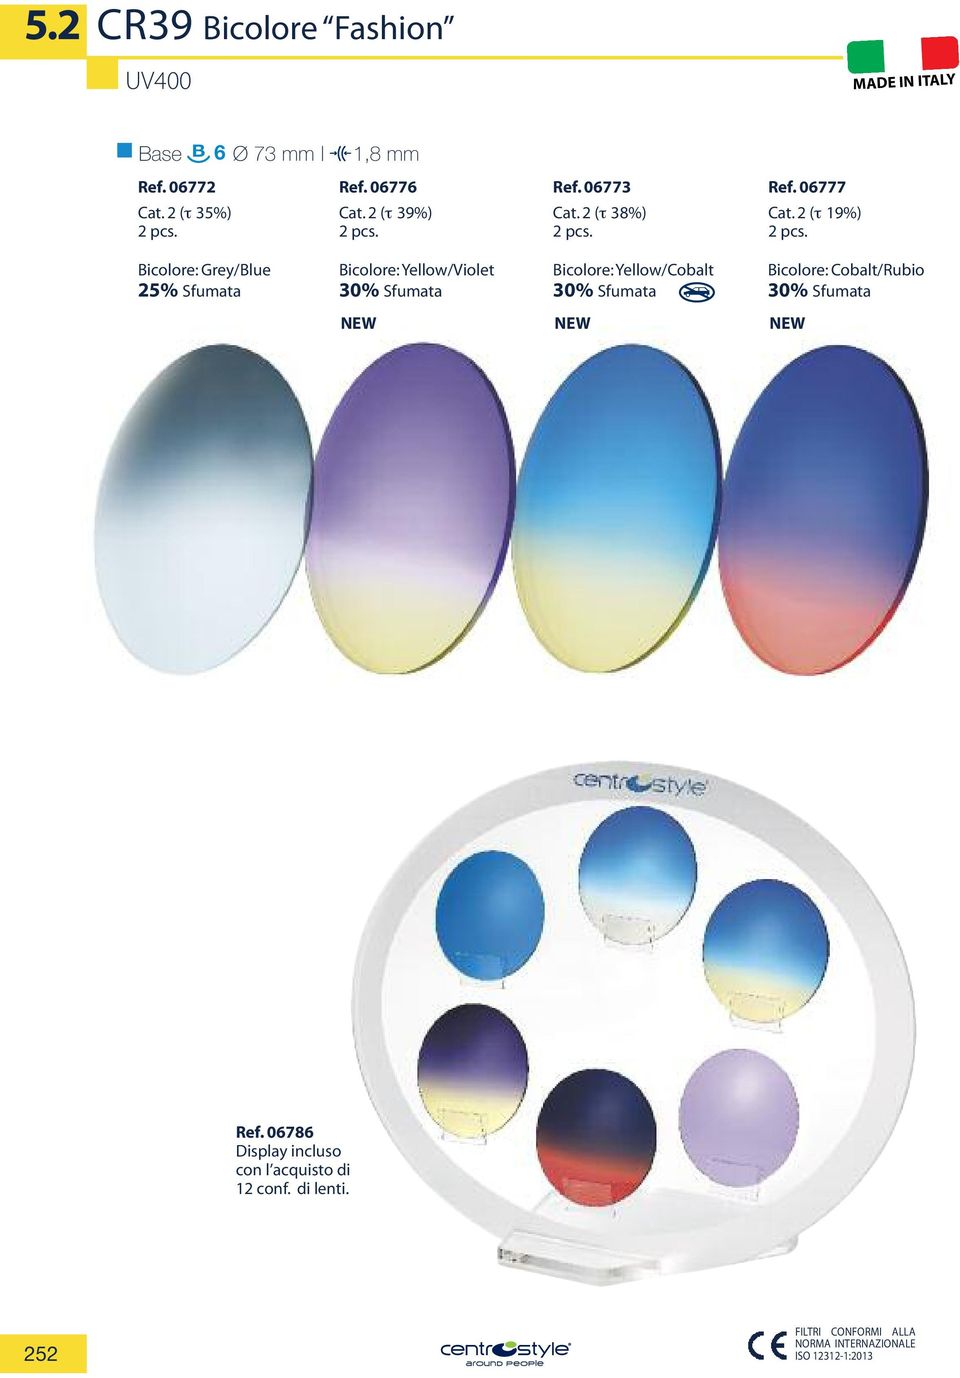 2 (τ 19%) Bicolore: Grey/Blue 25% Sfumata Bicolore: Yellow/Violet Bicolore: Yellow/Cobalt